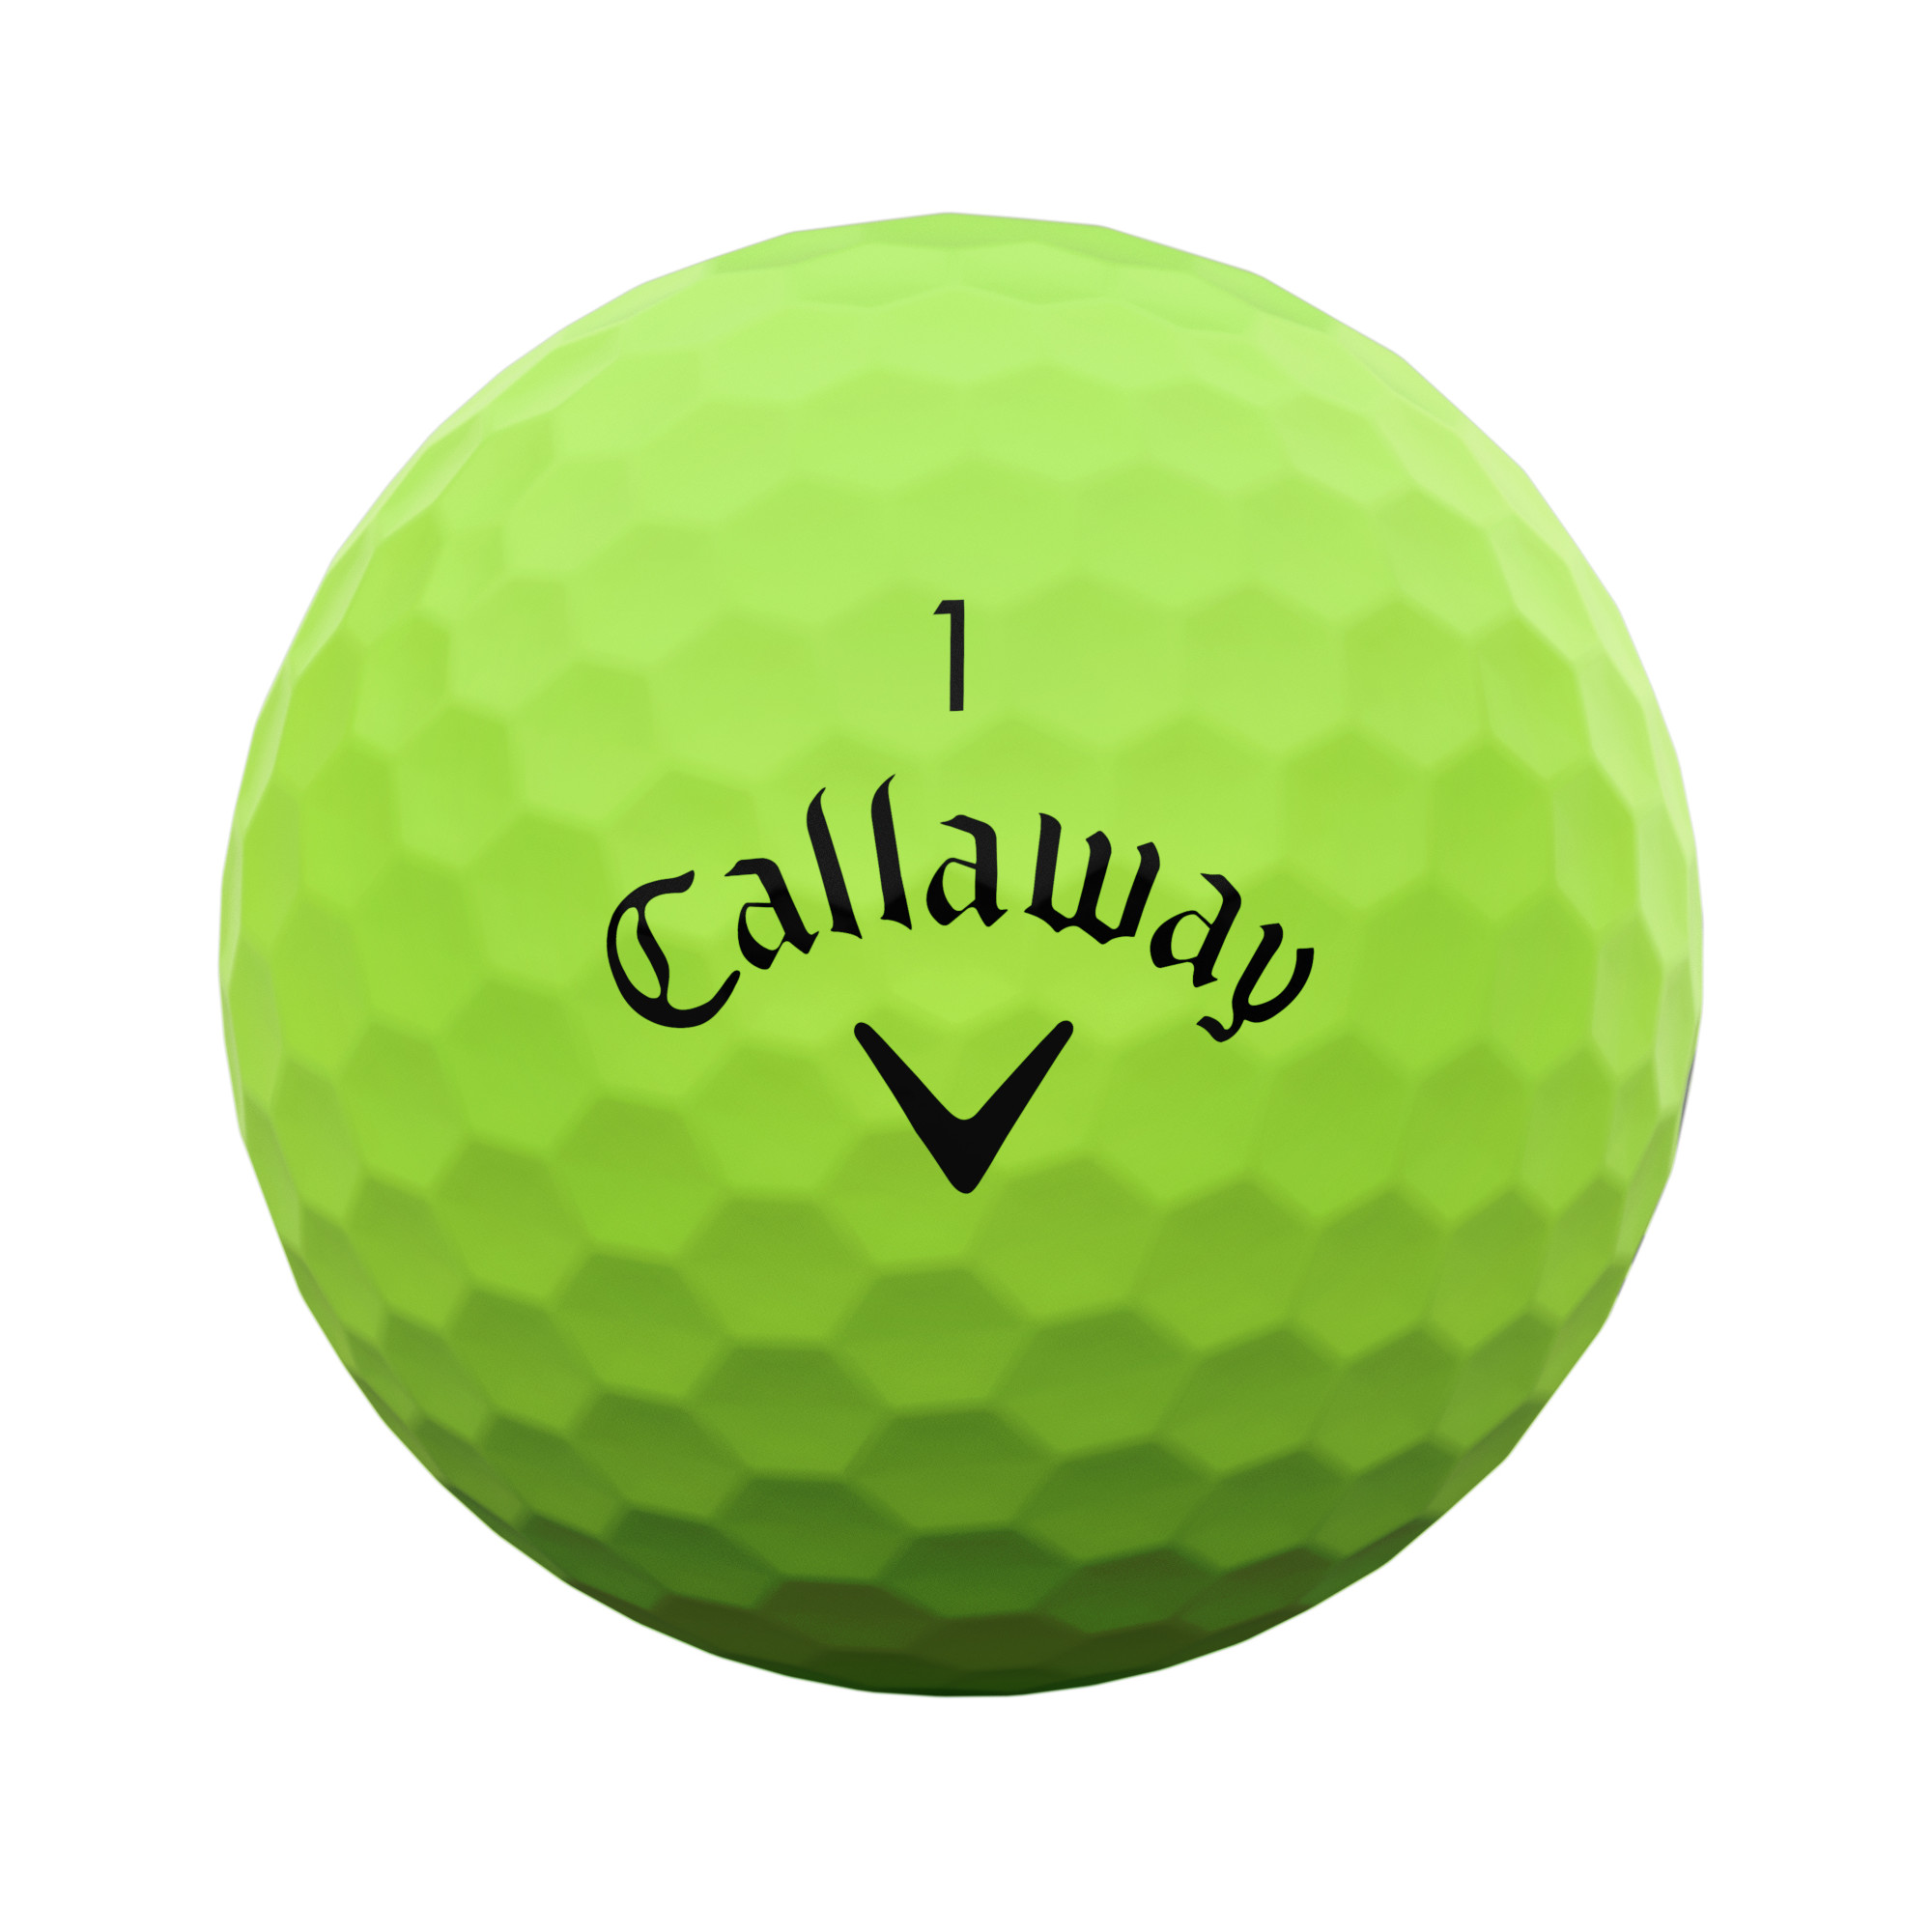 Callaway SuperSoft Golfbälle bedruckt, matt grün (VPE à 12 Bälle)